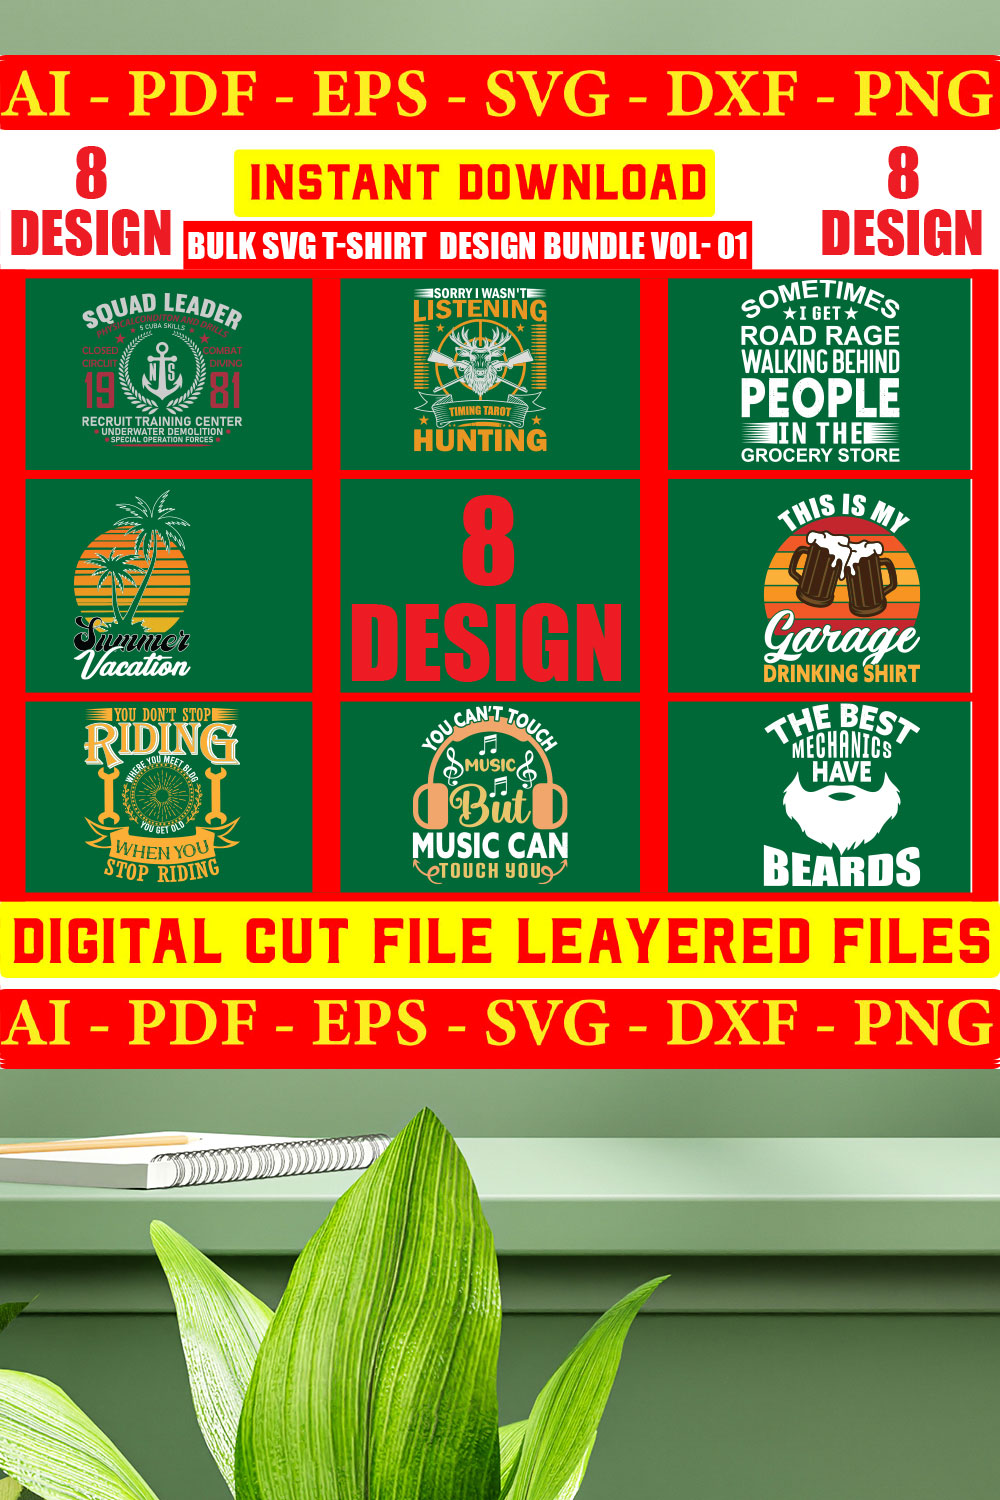 Bulk SVG T-shirt Design Bundle Vol- 08 pinterest preview image.